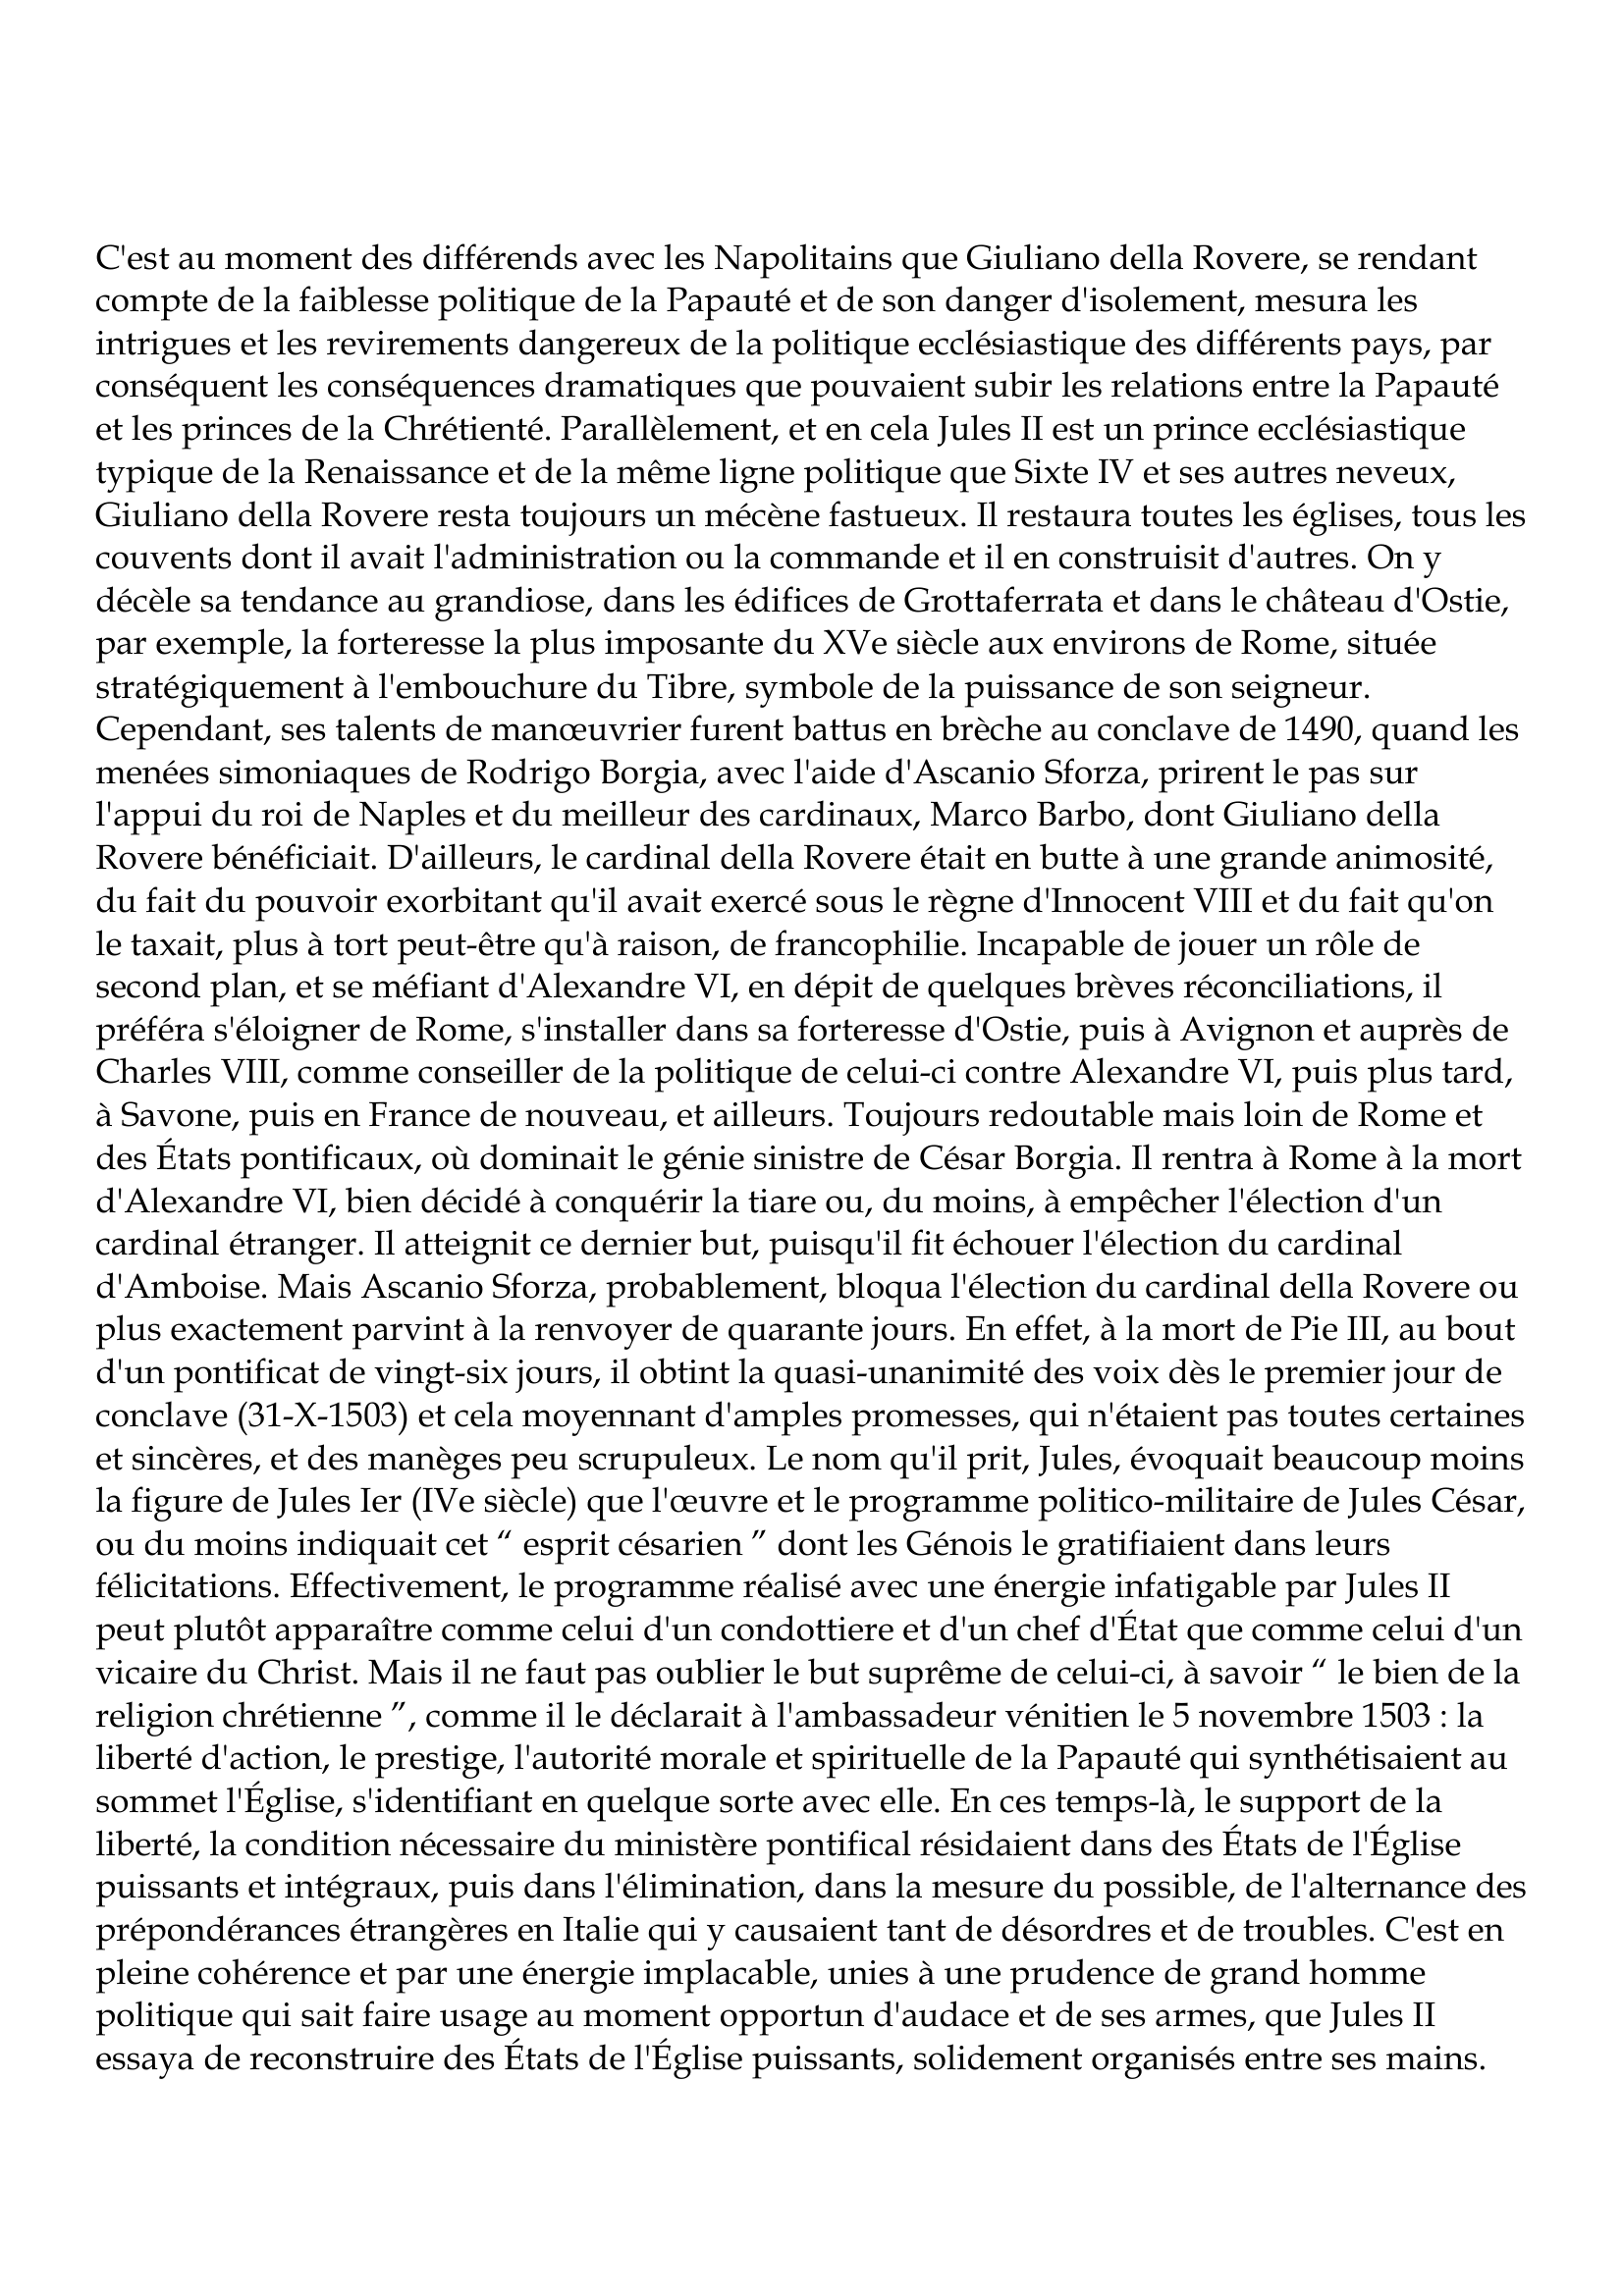 Prévisualisation du document Jules II
1443-1513
Né en 1443 à Albissola (province de Savone) d'une modeste famille d'artisans et de bateliers,
Giuliano della Rovere devint une des plus puissantes personnalités de la Renaissance, et
pendant son pontificat fut la figure de proue et souvent l'axe de la politique européenne.